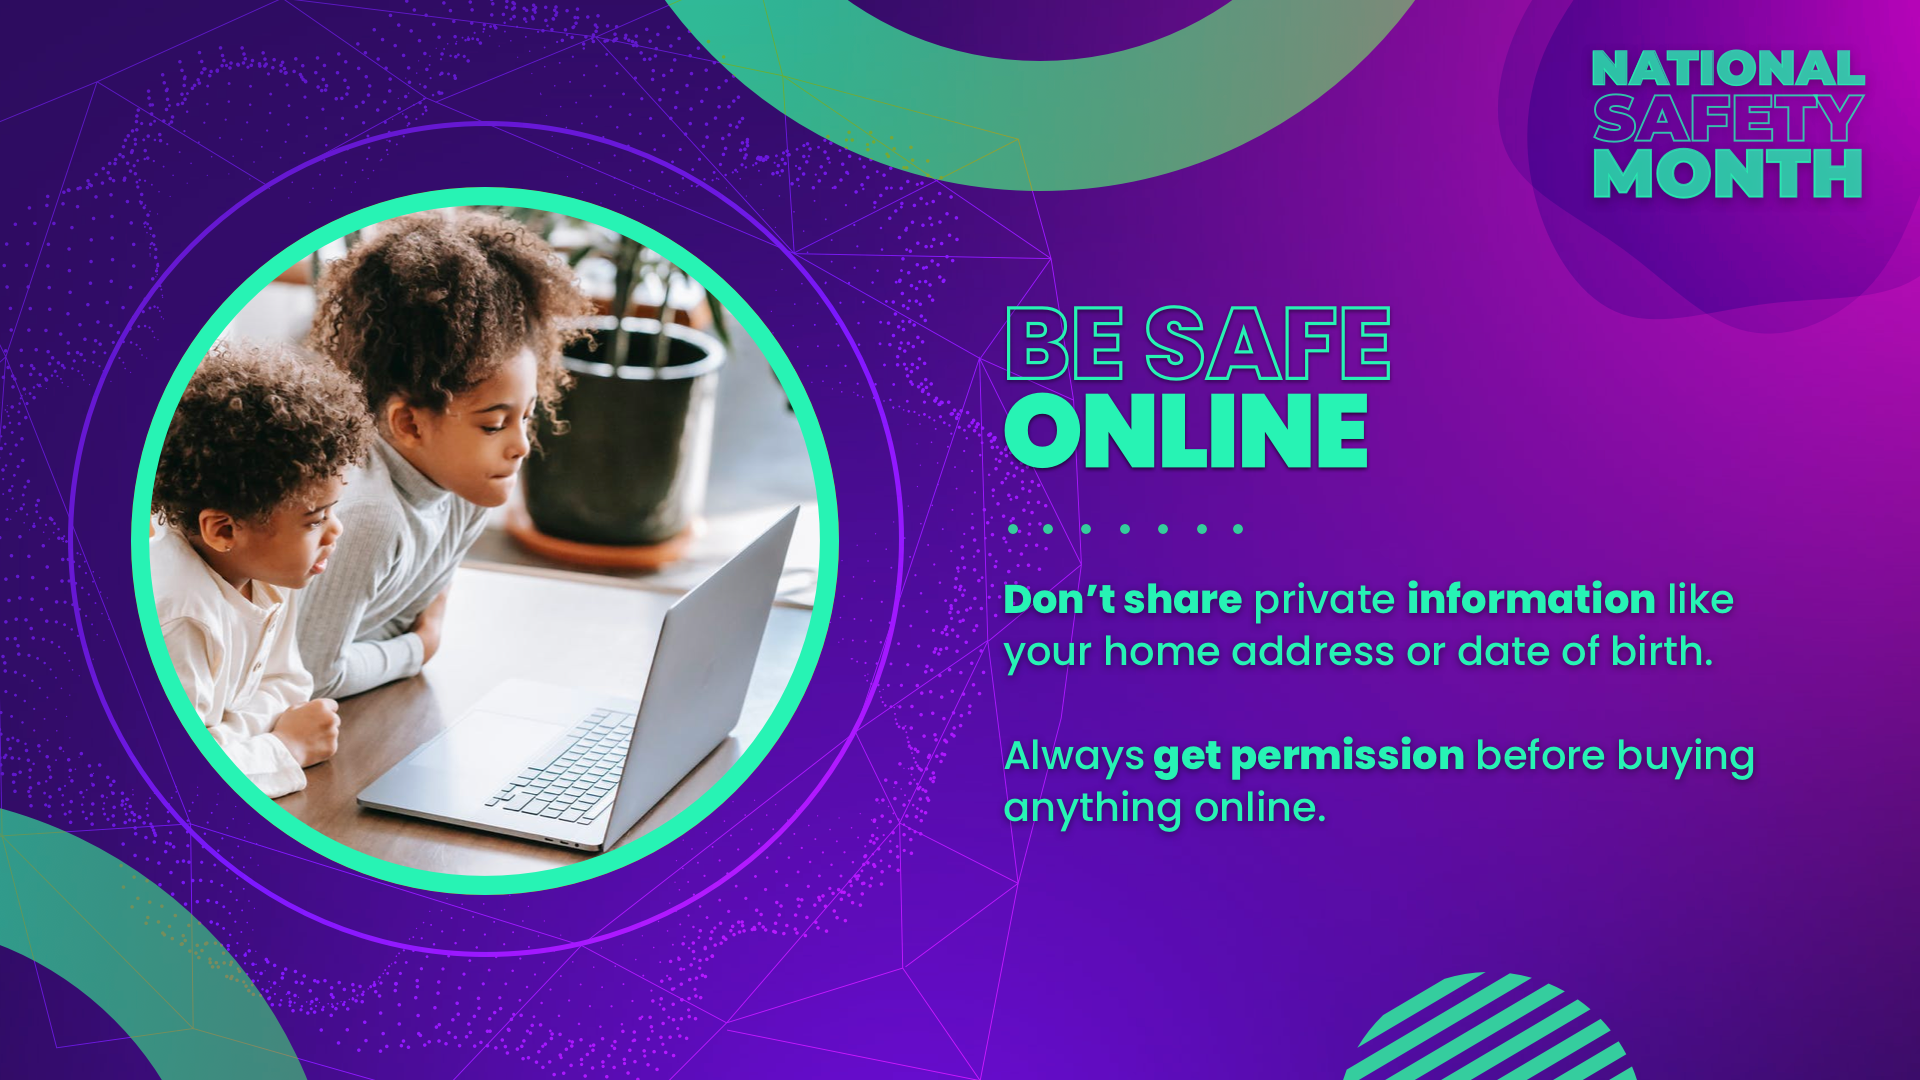 be safe online digital signage message